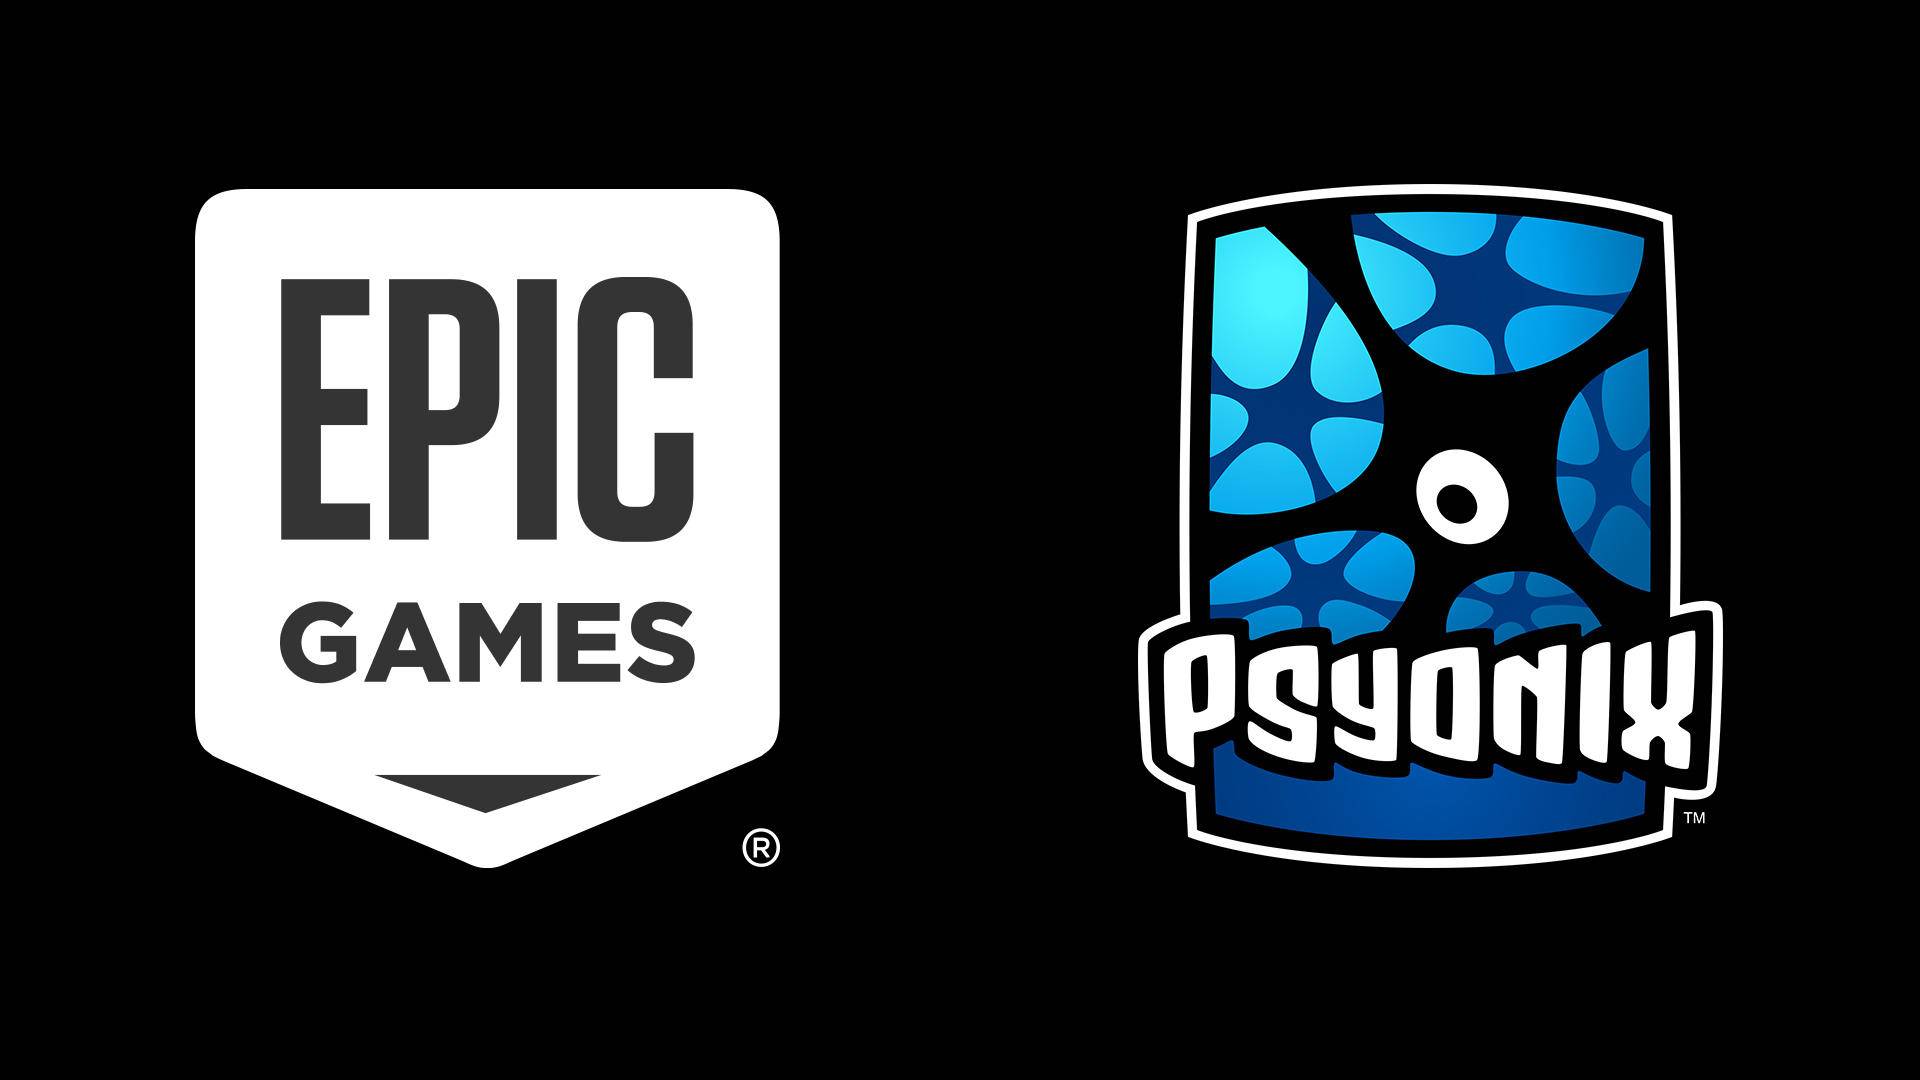 ¿Qué pasará con Rocket League ahora que Epic Games ha comprado Psyonix?